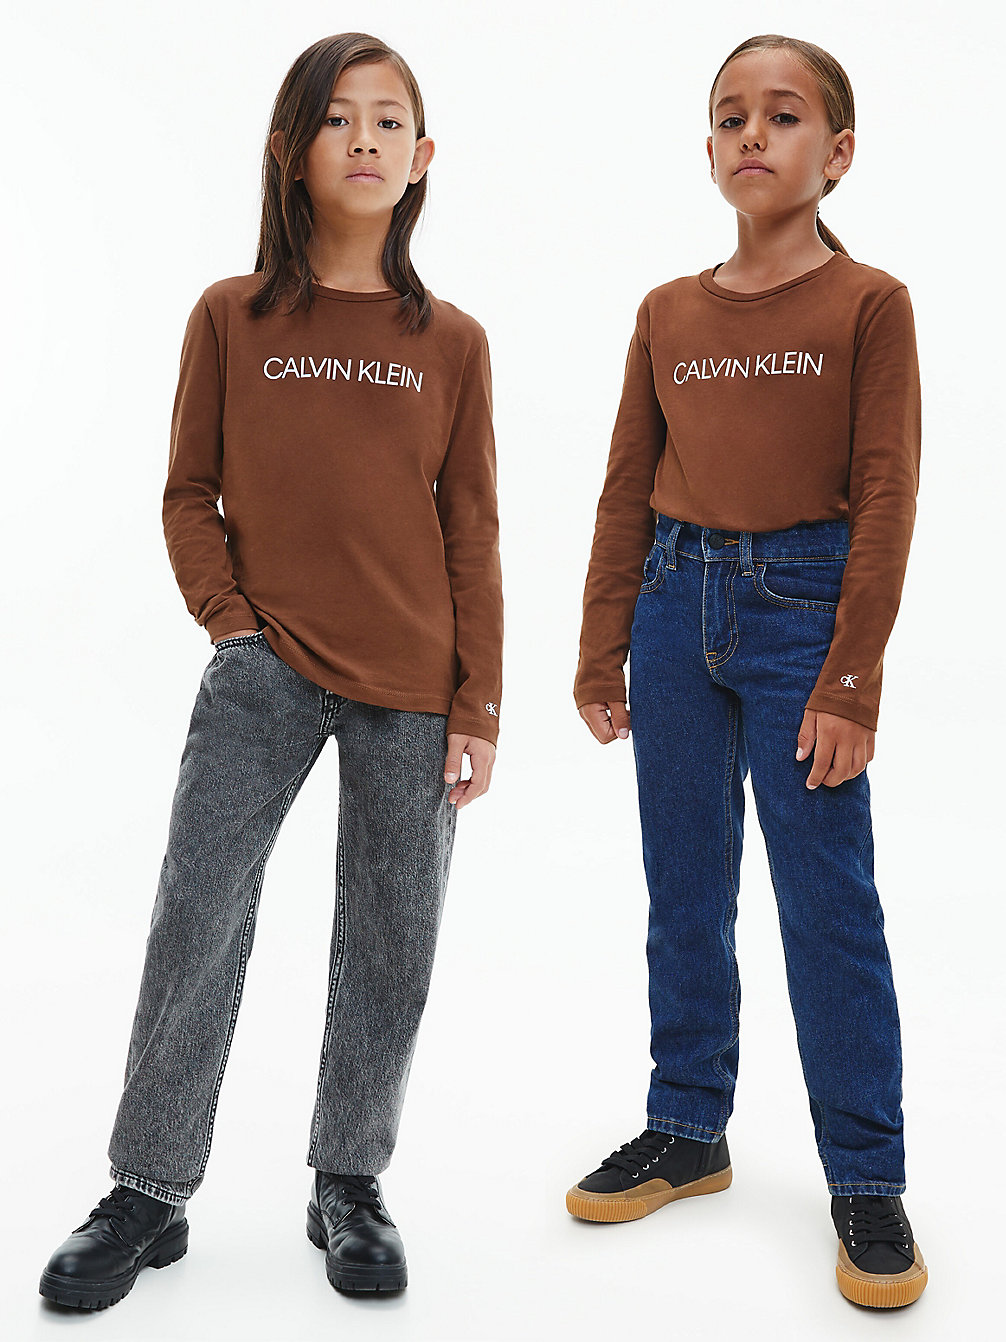 MILK CHOCOLATE > Unisex T-Shirt Met Lange Mouwen > undefined kids unisex - Calvin Klein